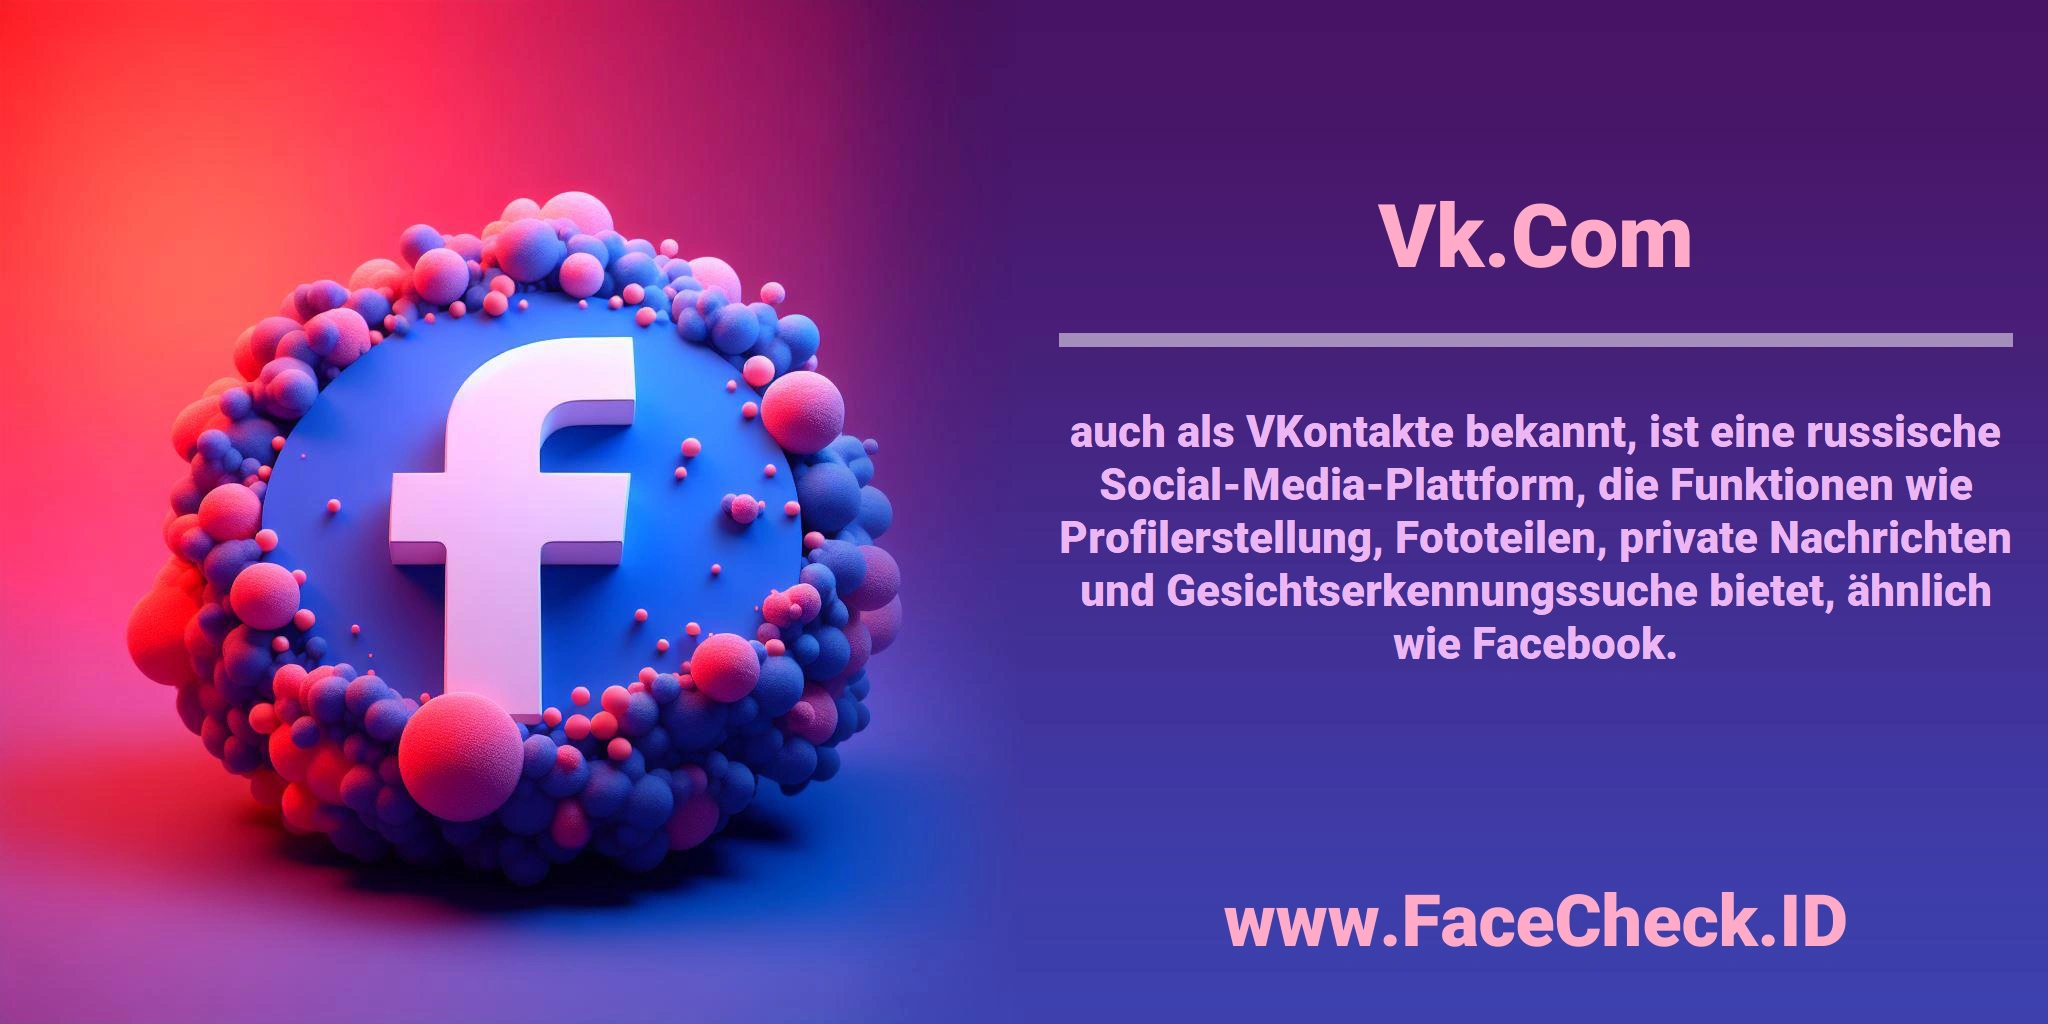 <b>Vk.Com</b> auch als VKontakte bekannt, ist eine russische Social-Media-Plattform, die Funktionen wie Profilerstellung, Fototeilen, private Nachrichten und Gesichtserkennungssuche bietet, ähnlich wie Facebook.